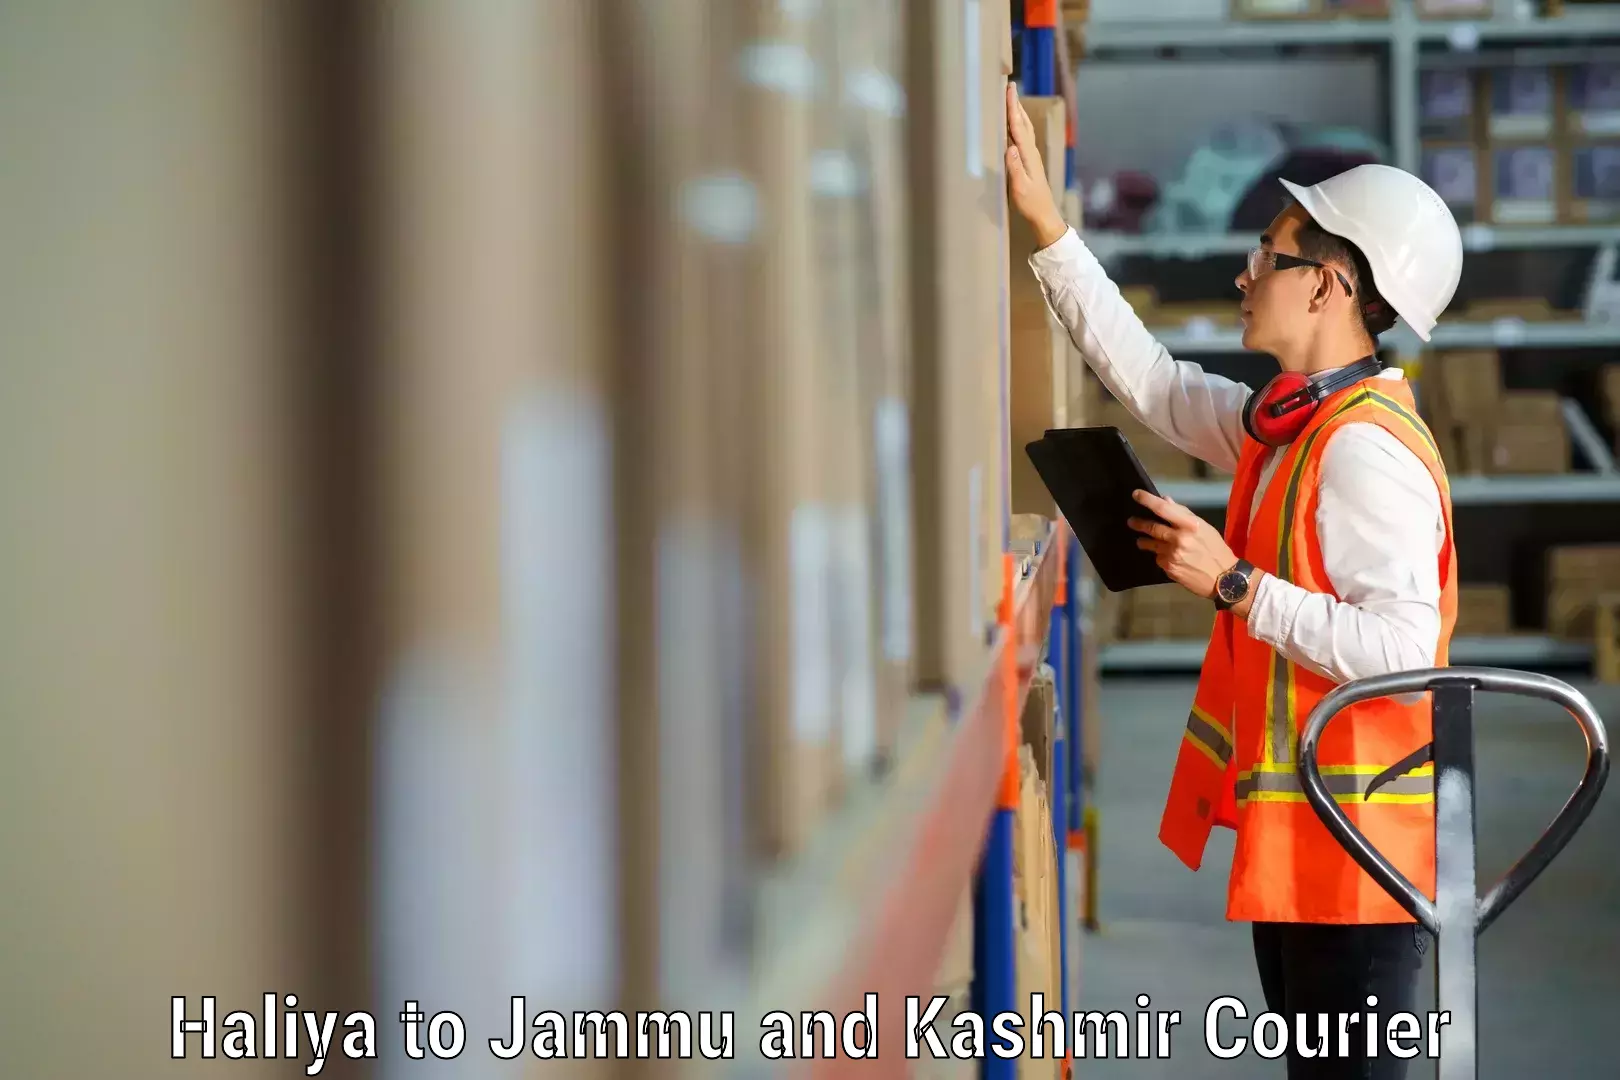 Efficient packing services in Haliya to Srinagar Kashmir